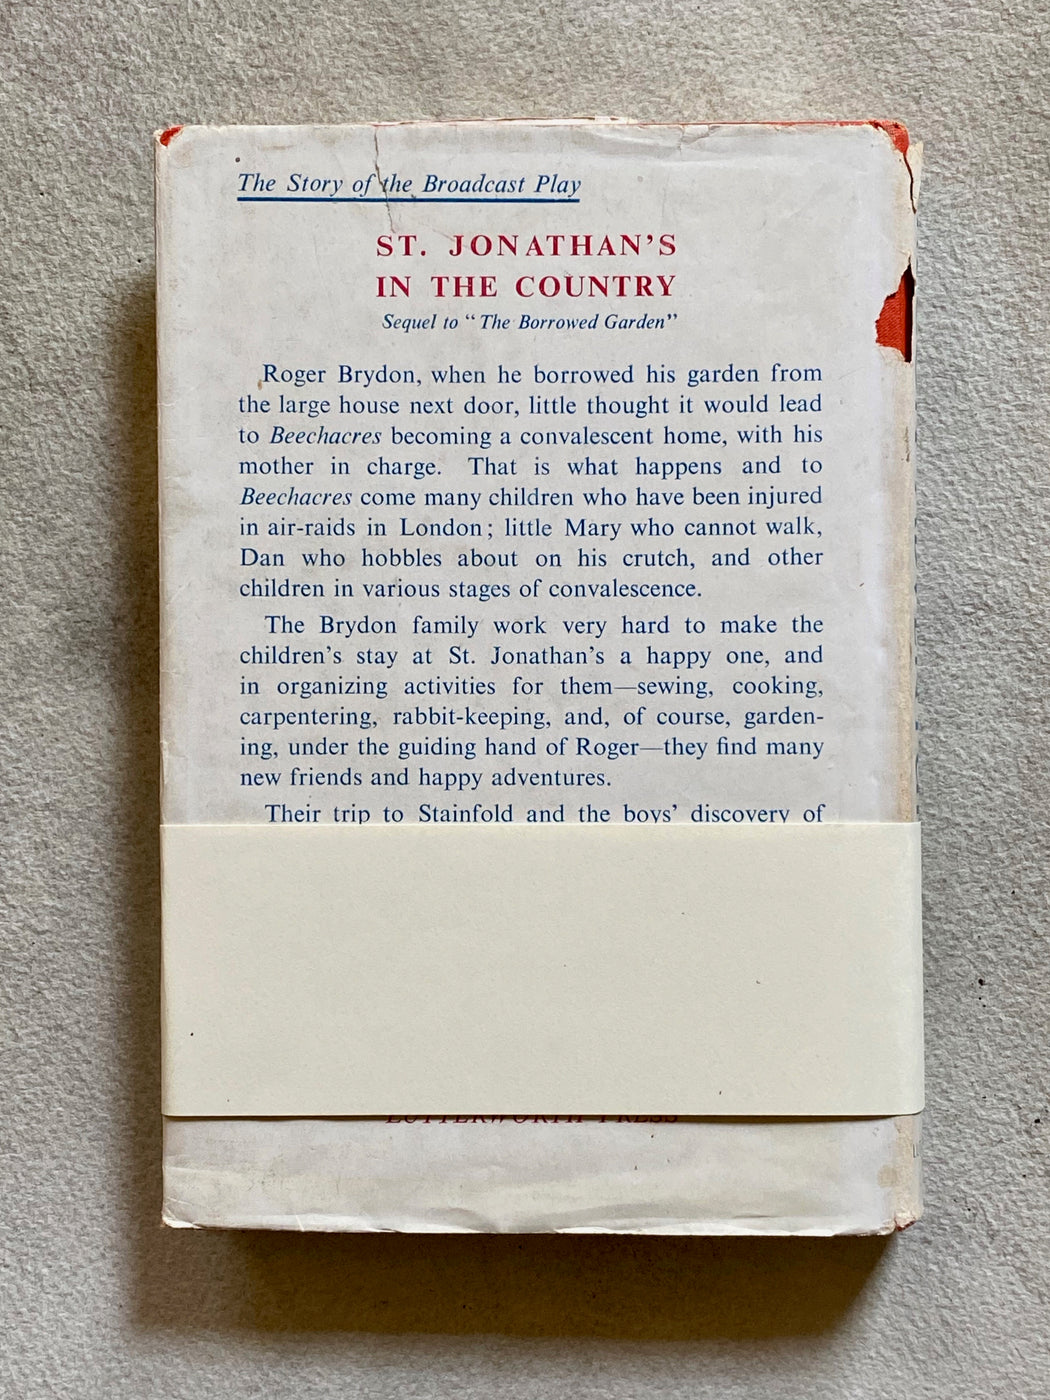 "Brecon Adventure" Vintage Blank Book